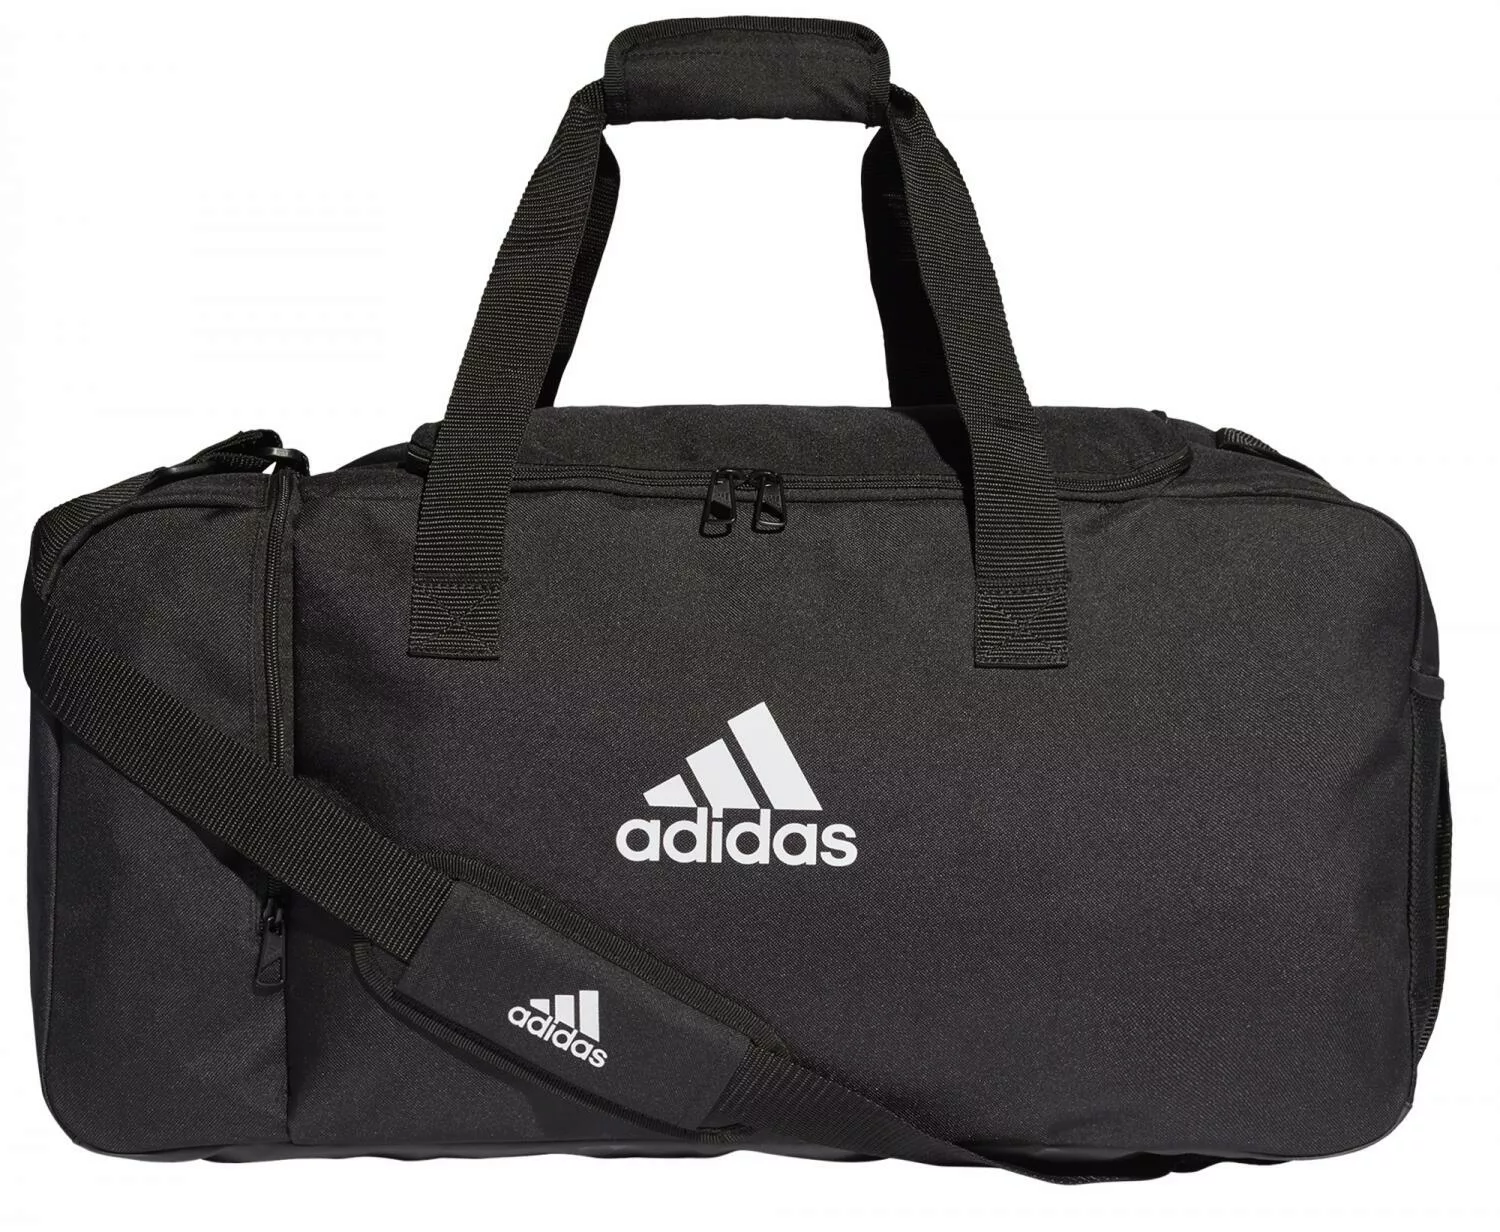 adidas Tiro Duffelbag Sporttasche M (Farbe: black/white) günstig online kaufen